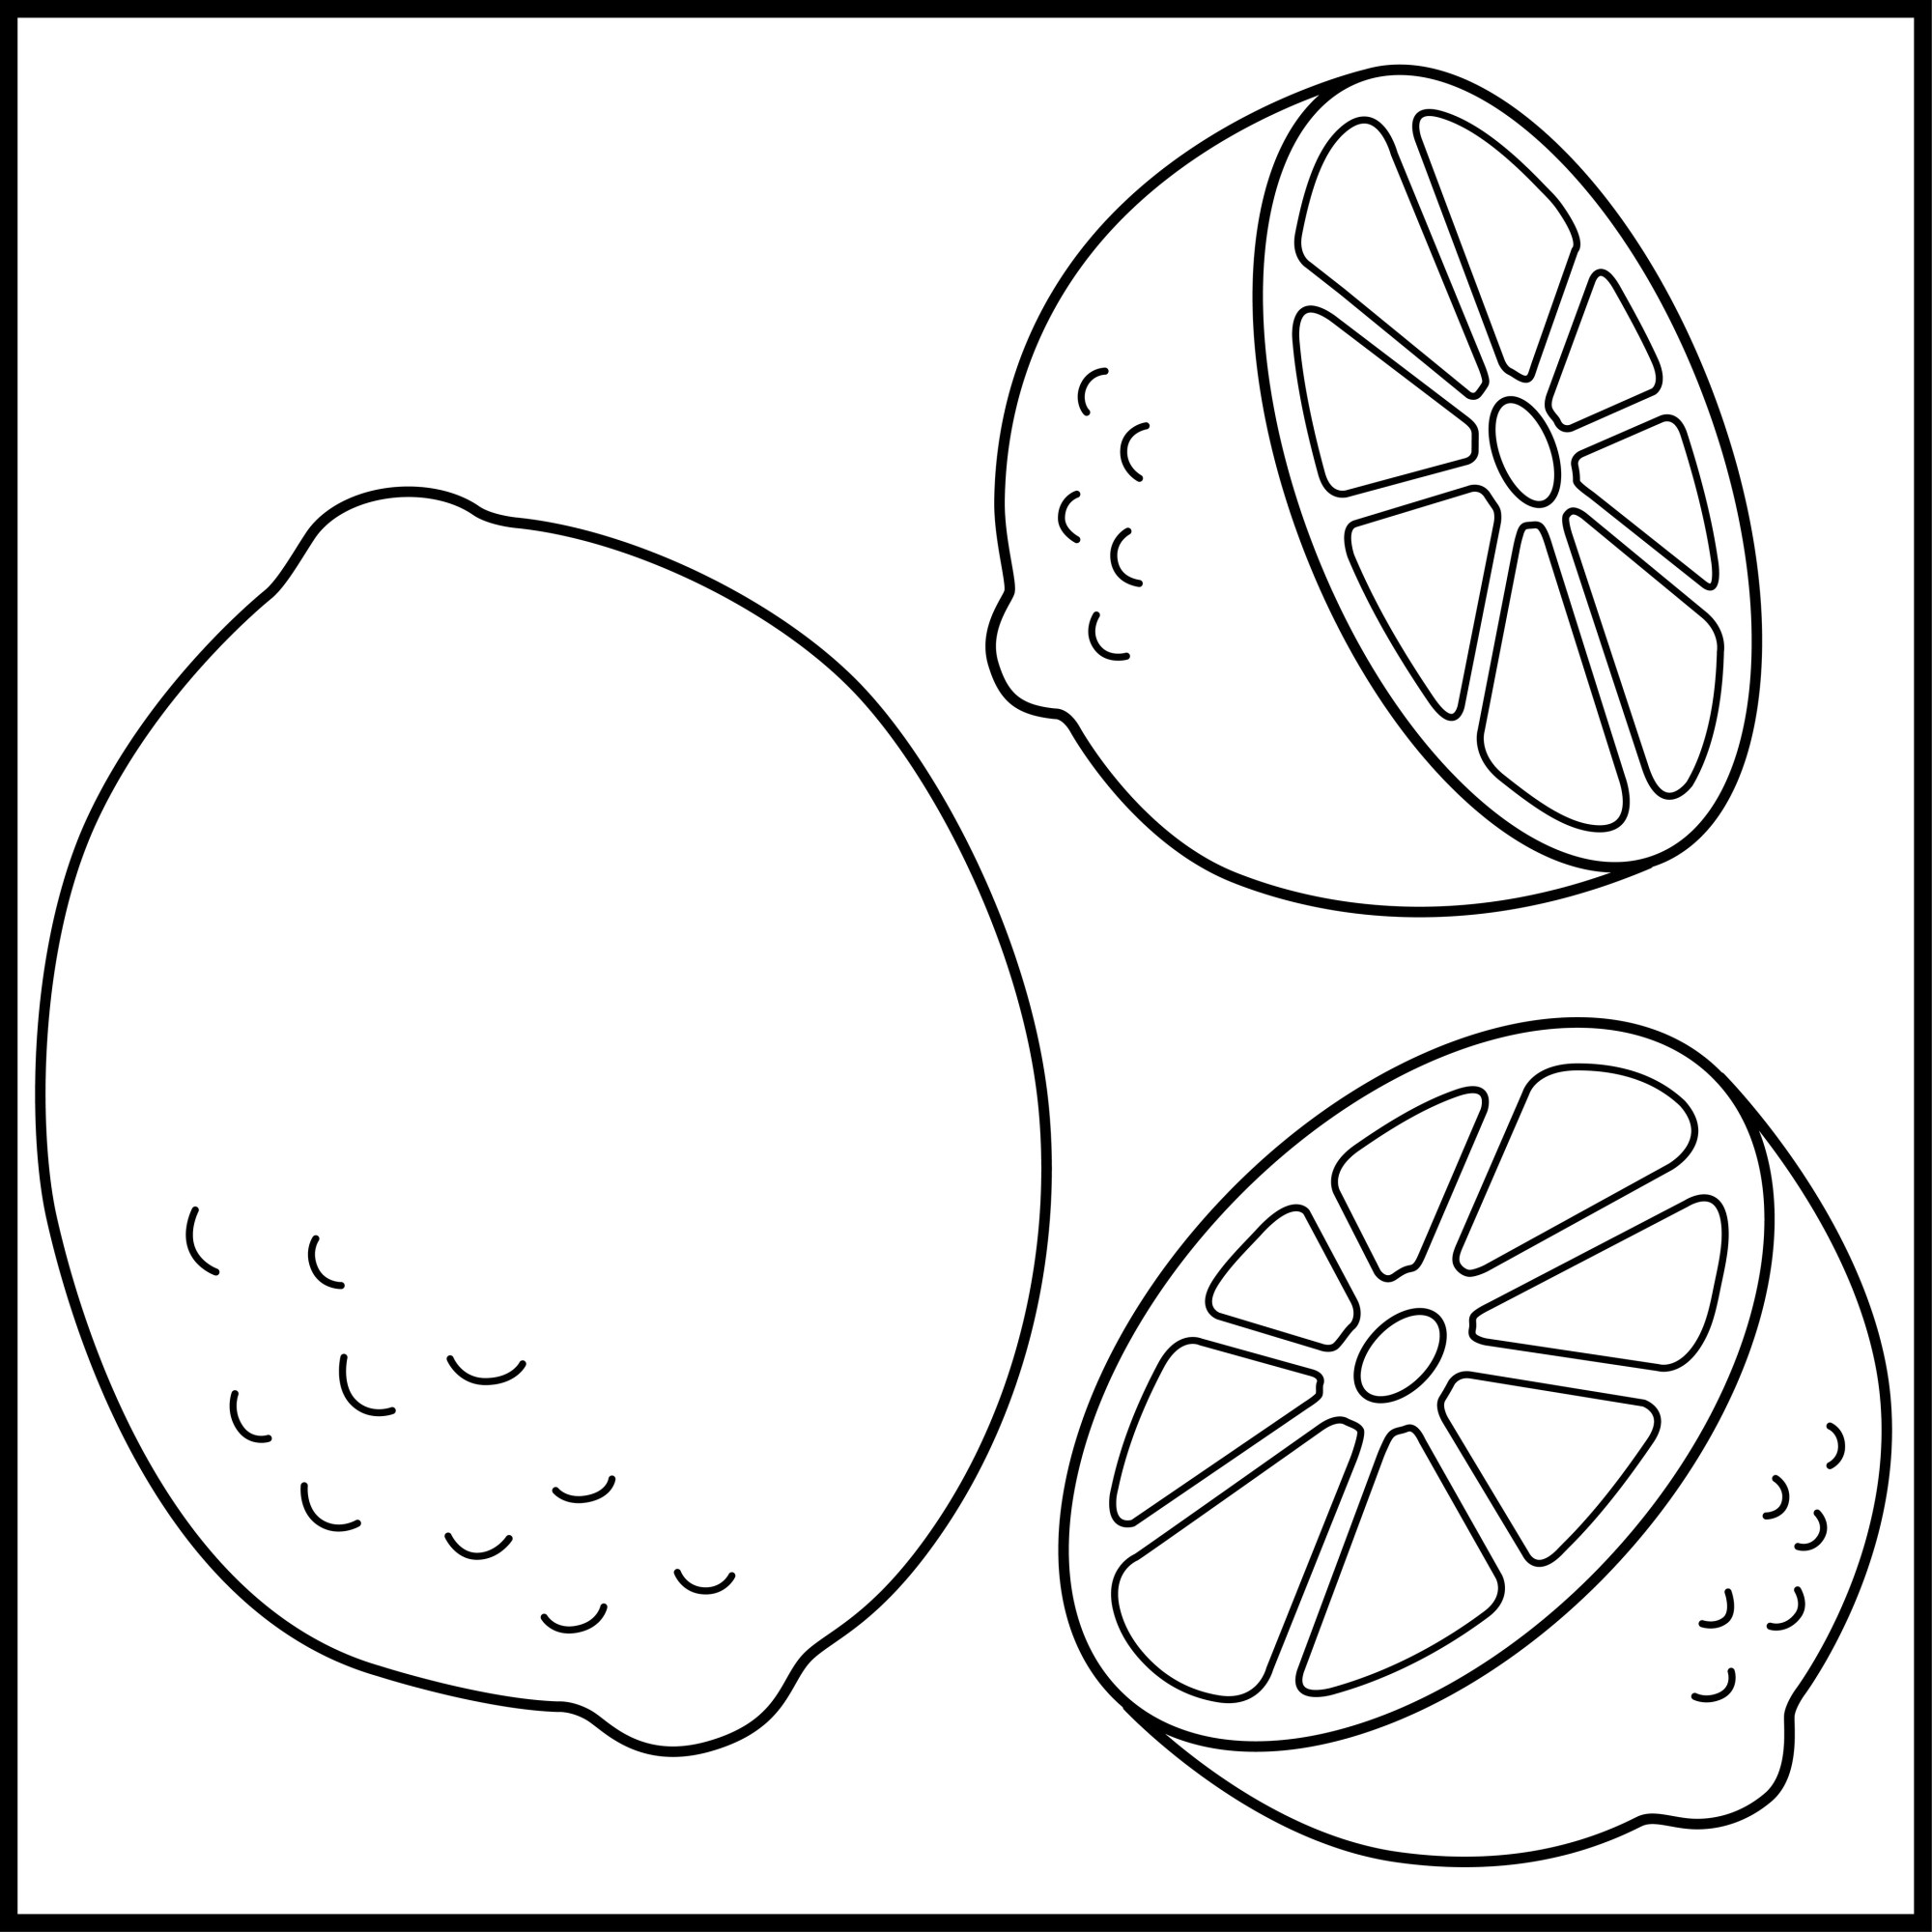 Раскраска для детей: лимонный фрукт с половинками